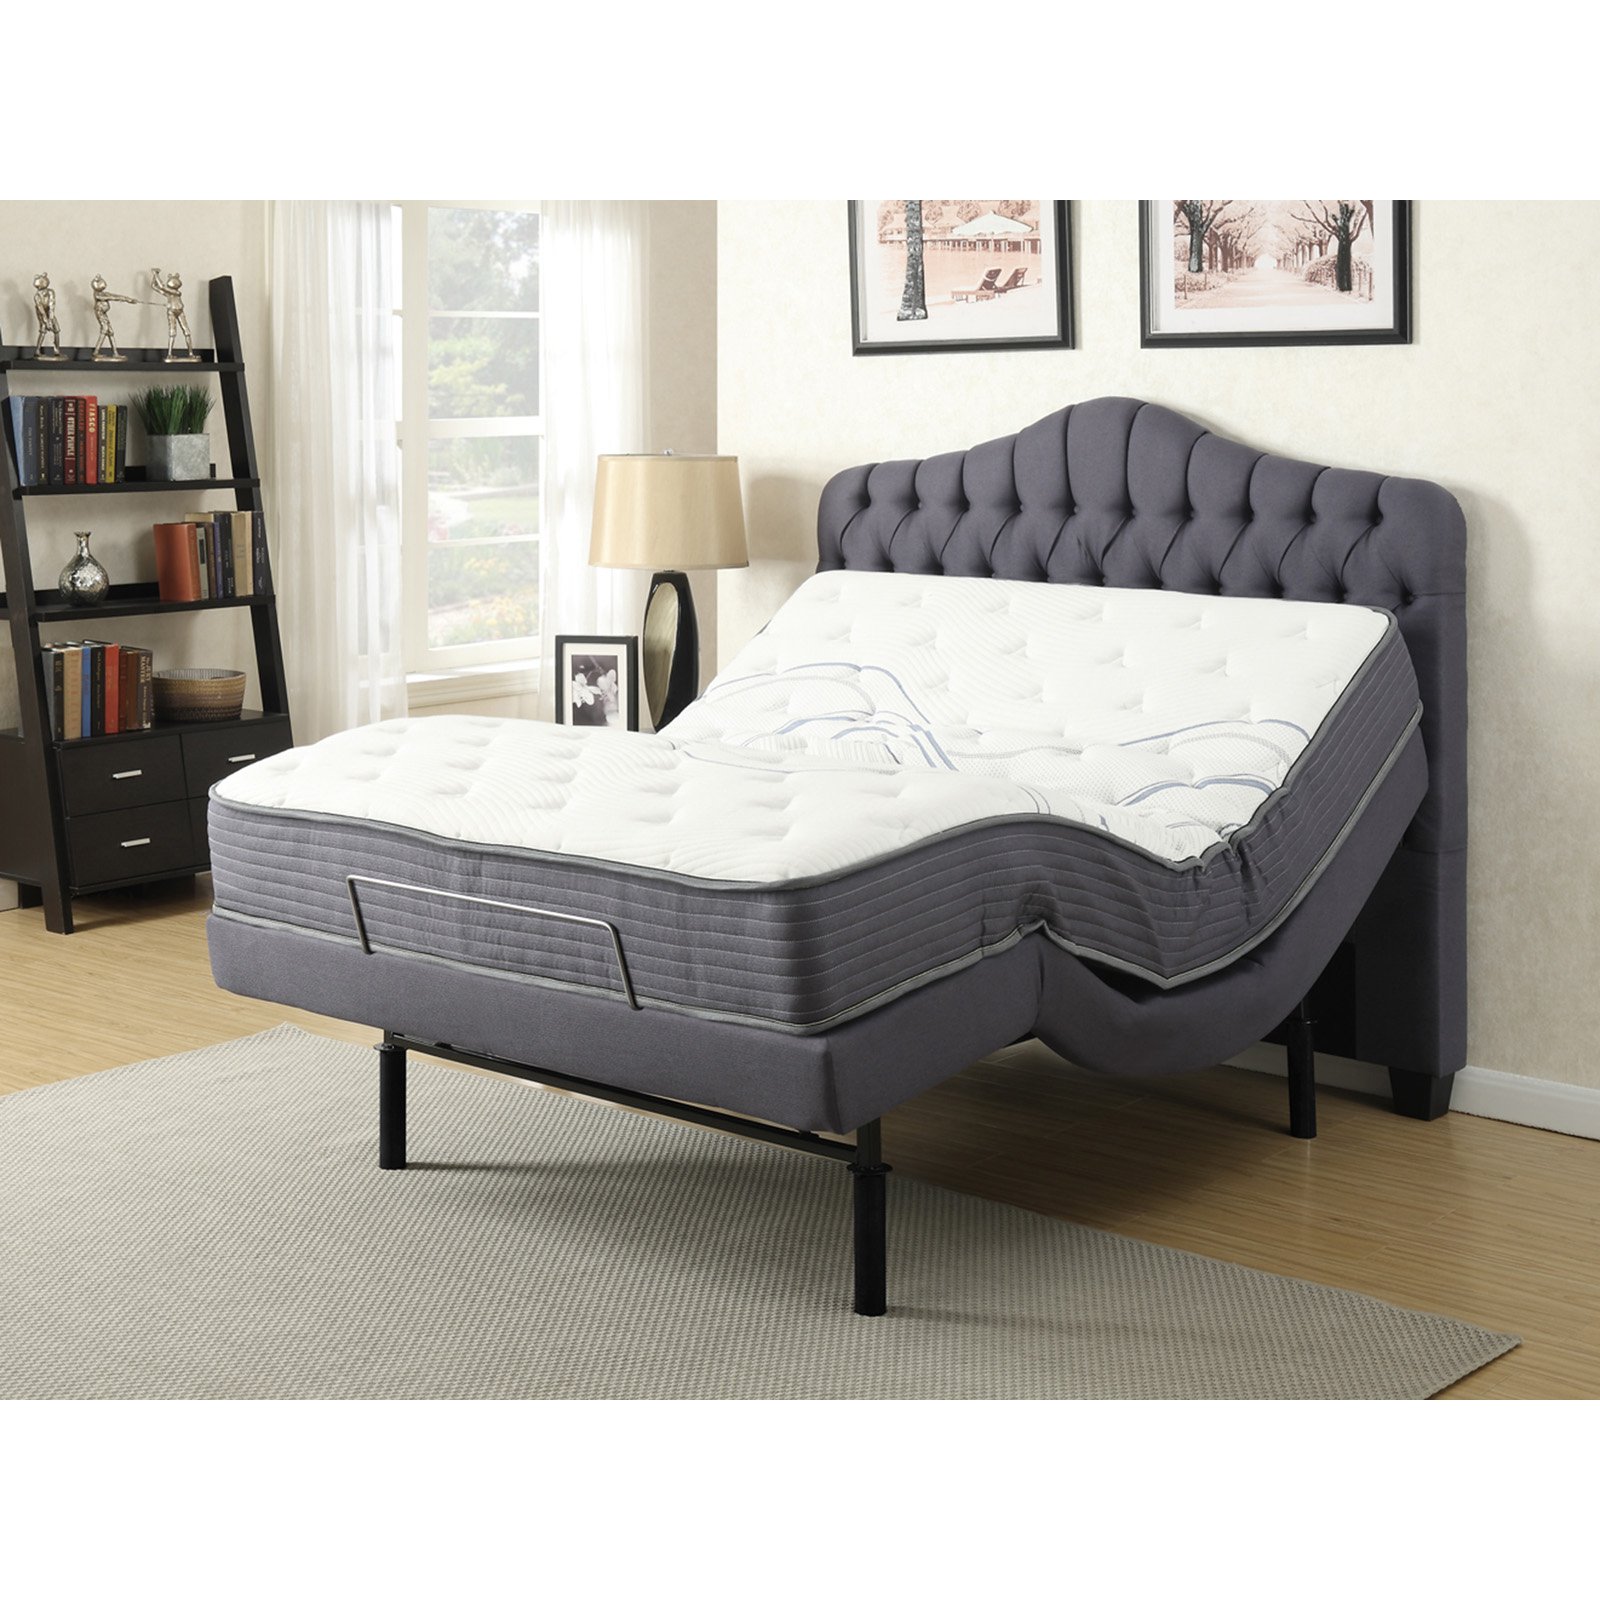 Gemma Adjustable Bed, Grey - Queen